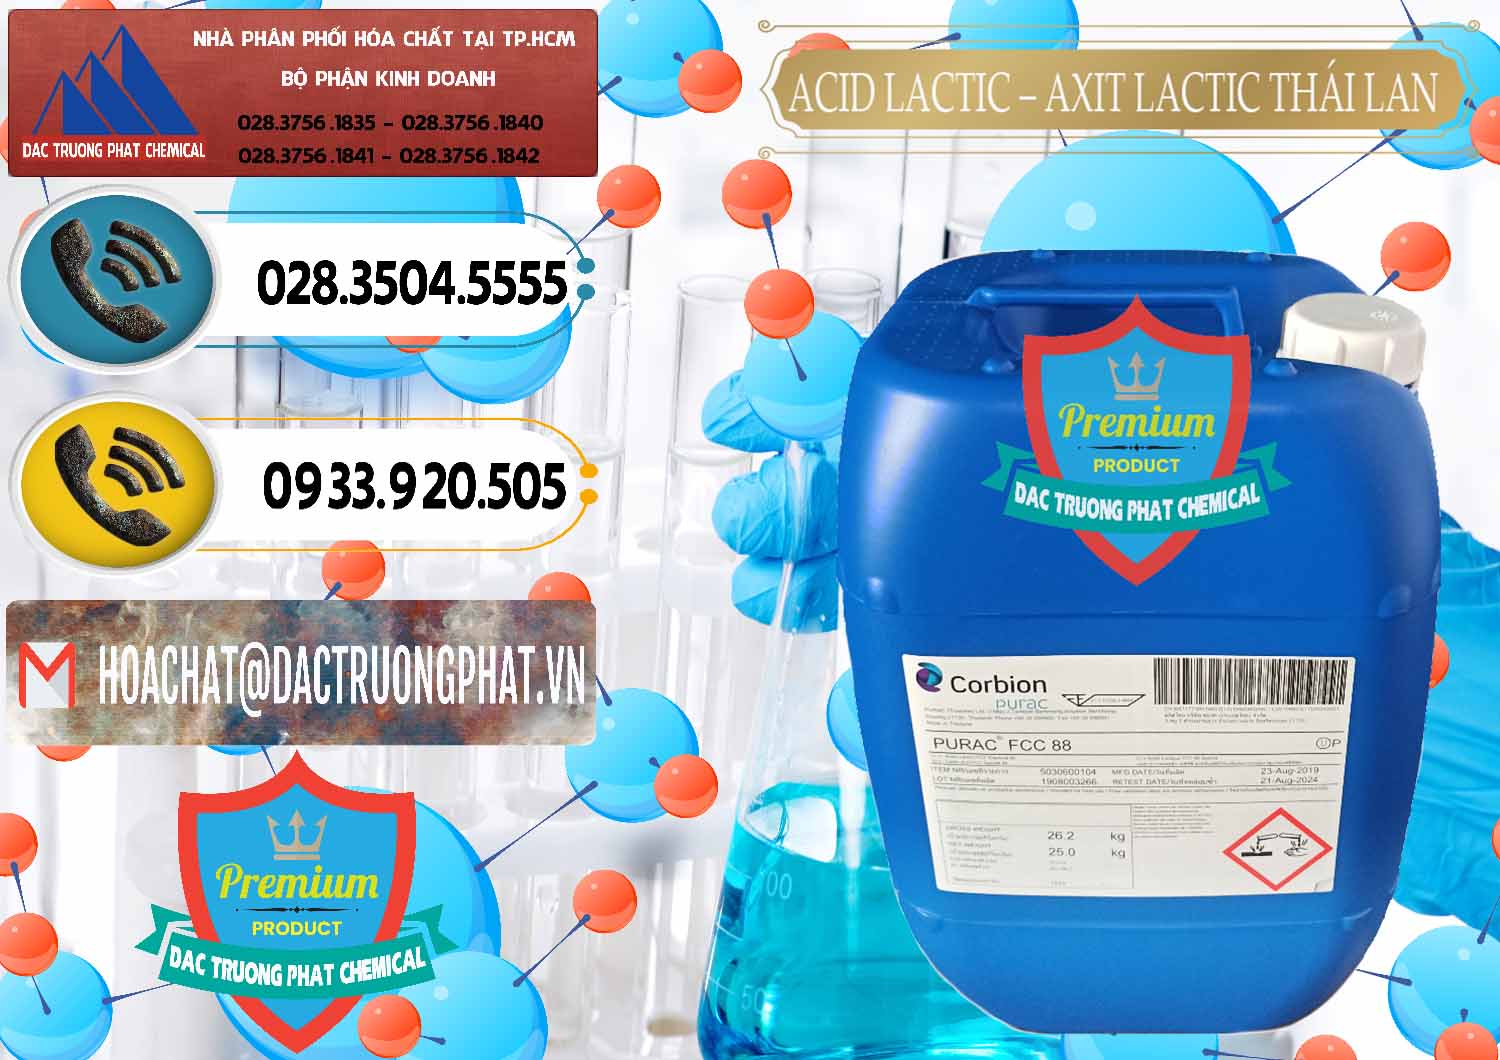 Đơn vị nhập khẩu - bán Acid Lactic – Axit Lactic Thái Lan Purac FCC 88 - 0012 - Công ty cung cấp và bán hóa chất tại TP.HCM - hoachatdetnhuom.vn